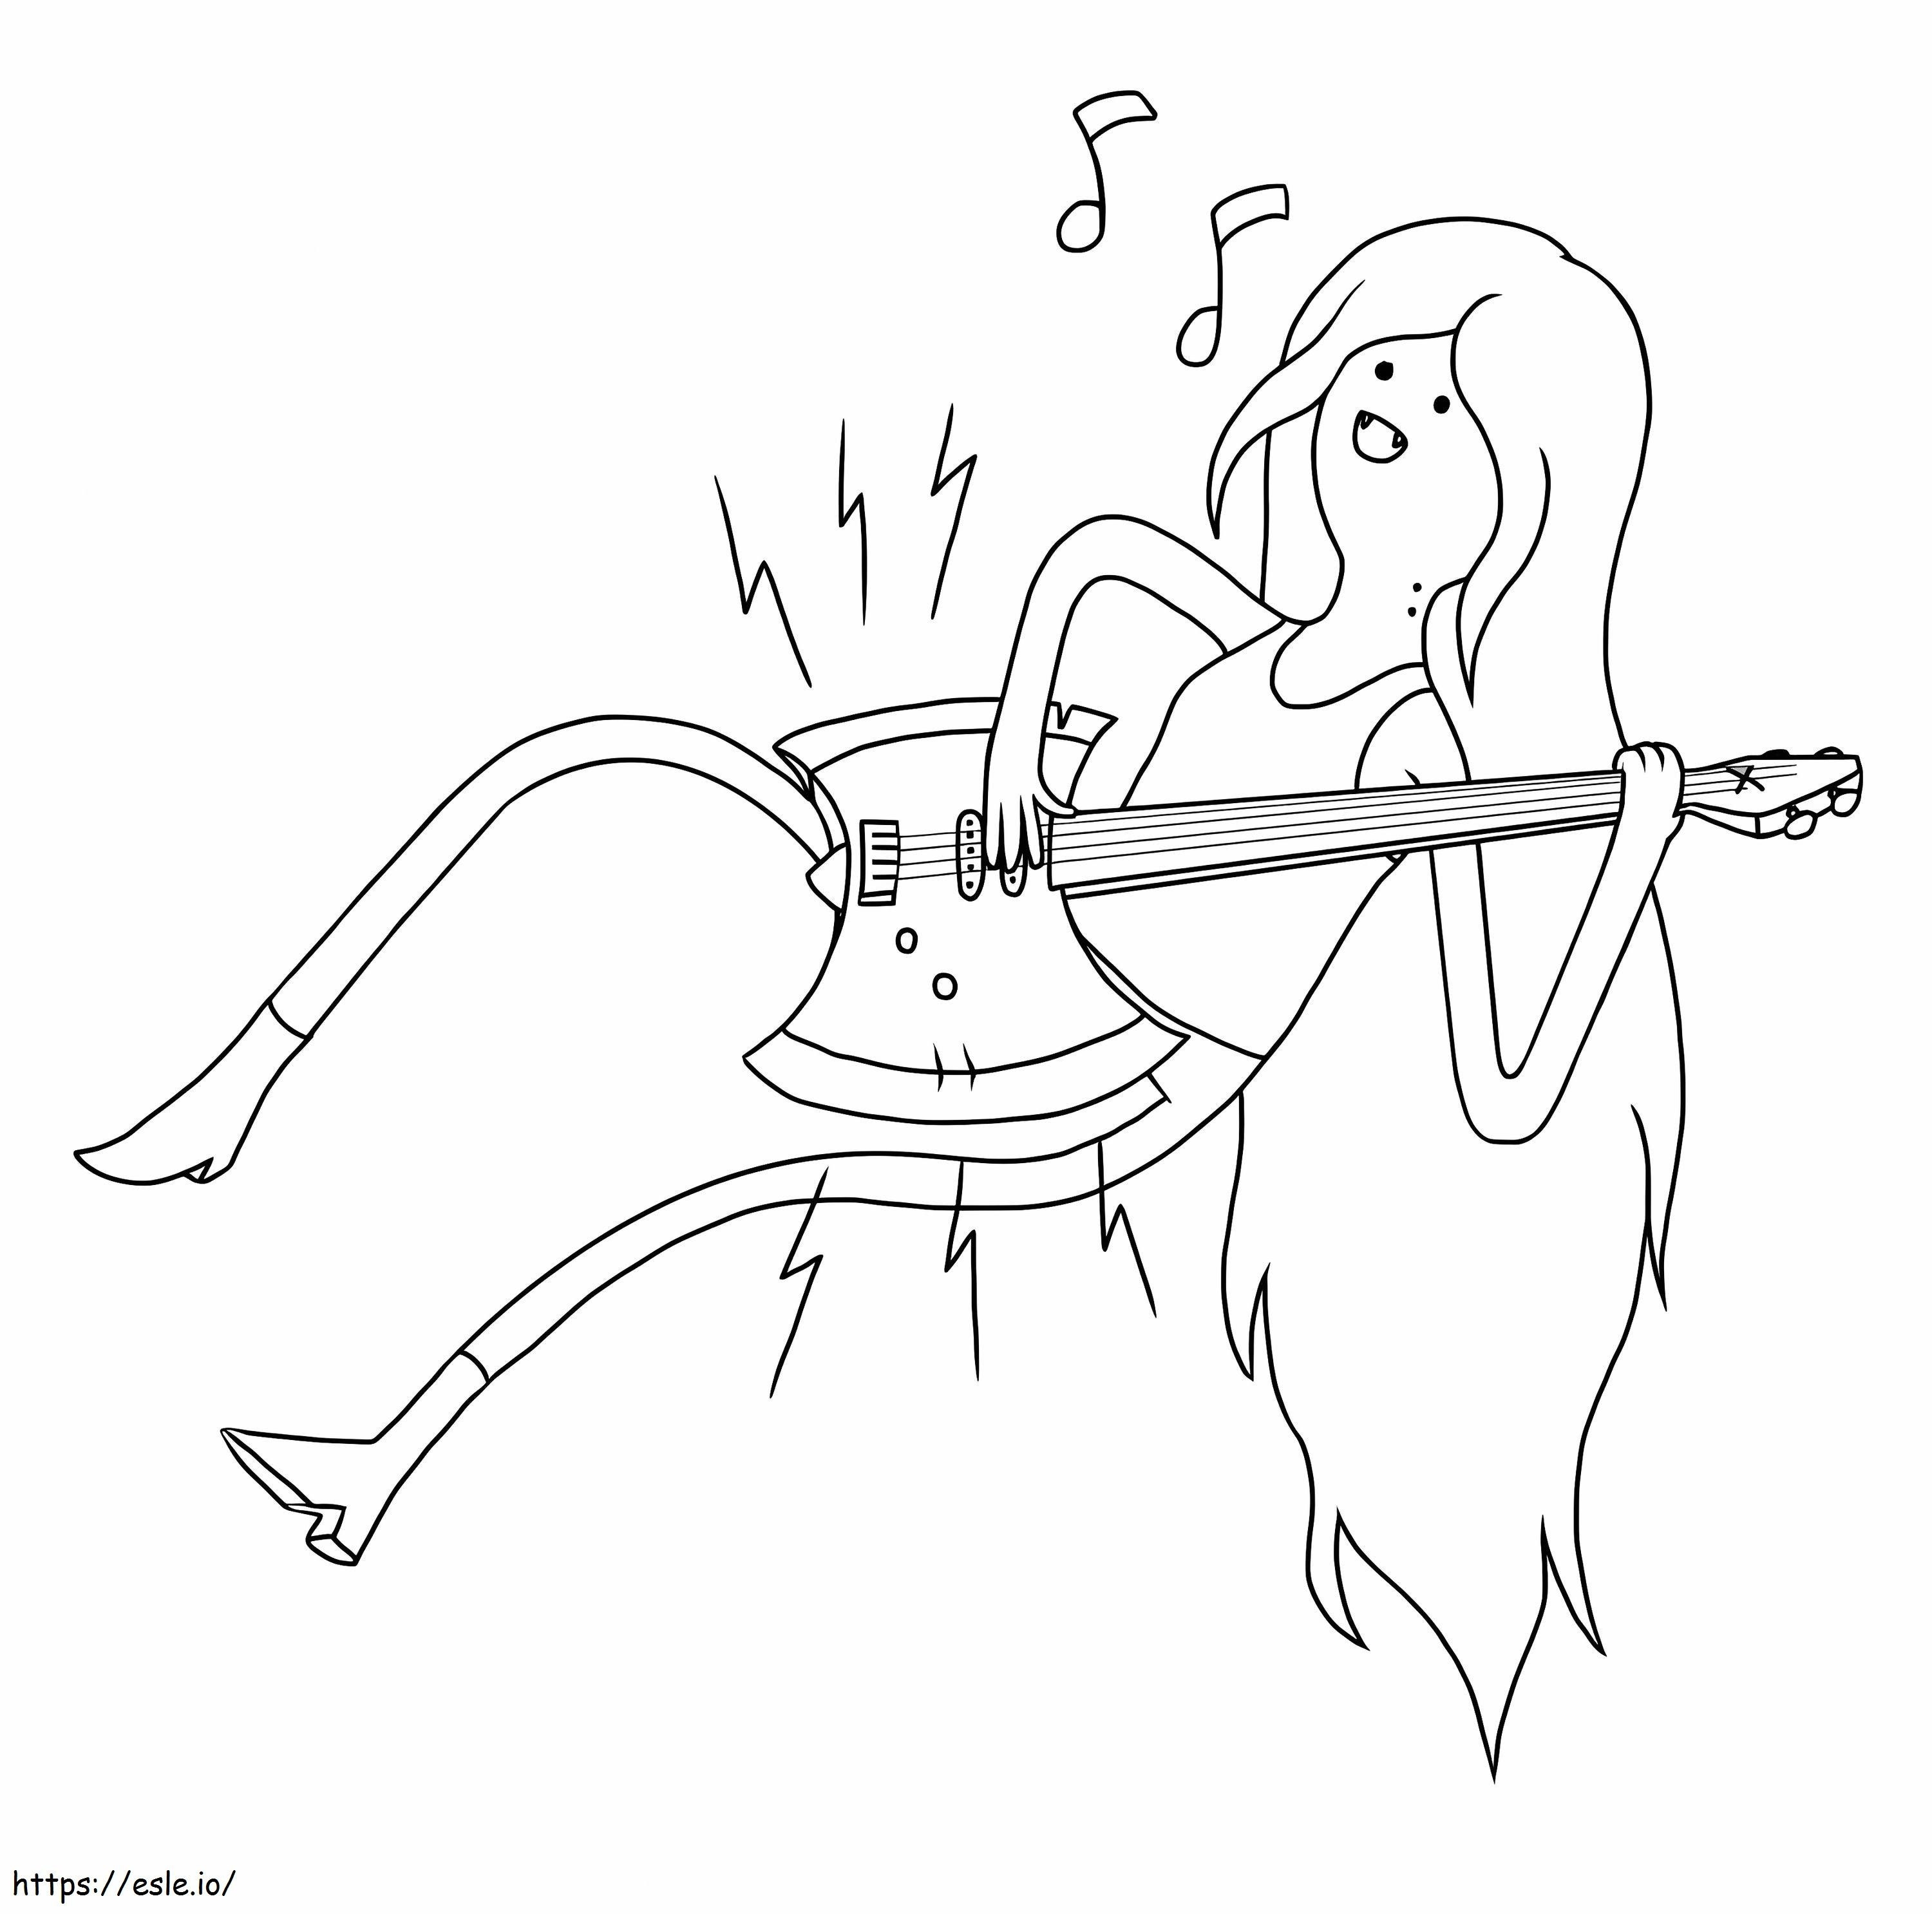 Marceline gitar çalıyor boyama